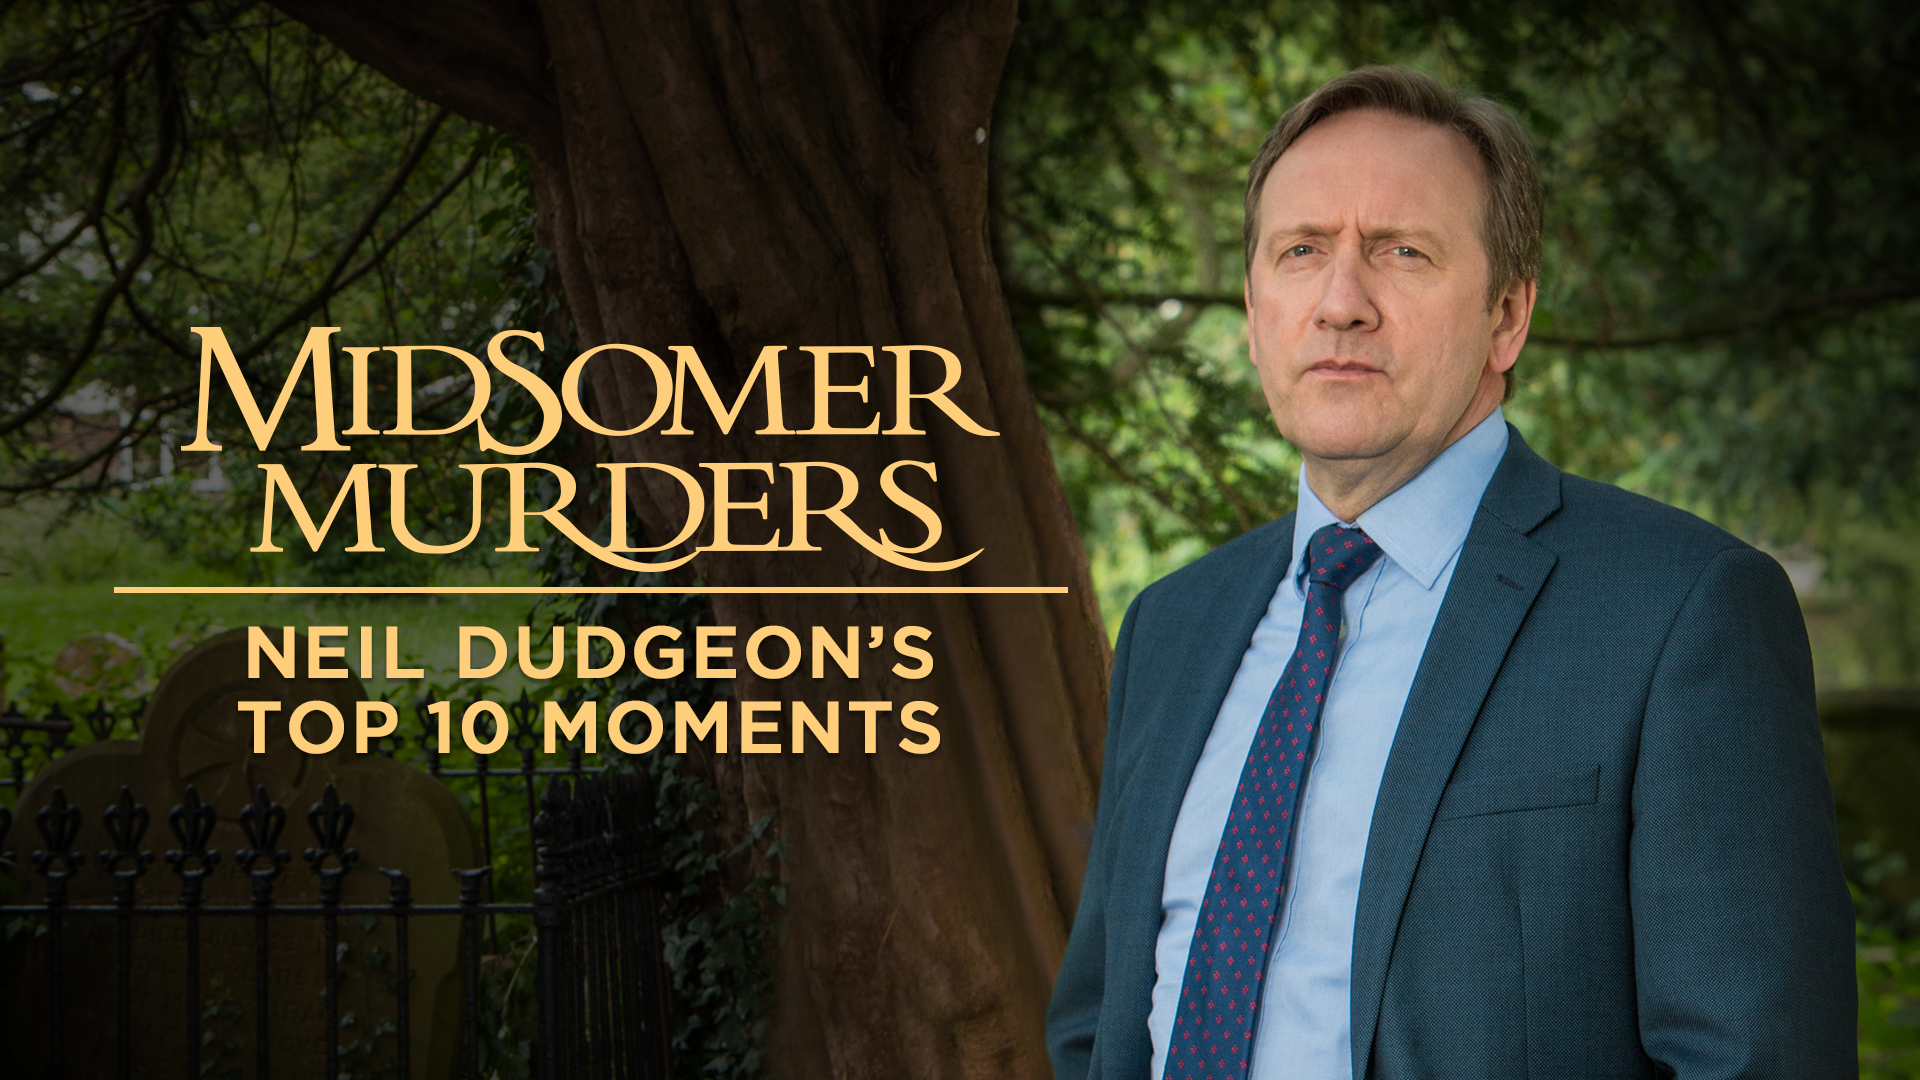 Watch Midsomer Murders: Neil Dudgeon's Top 10 on Acorn TV